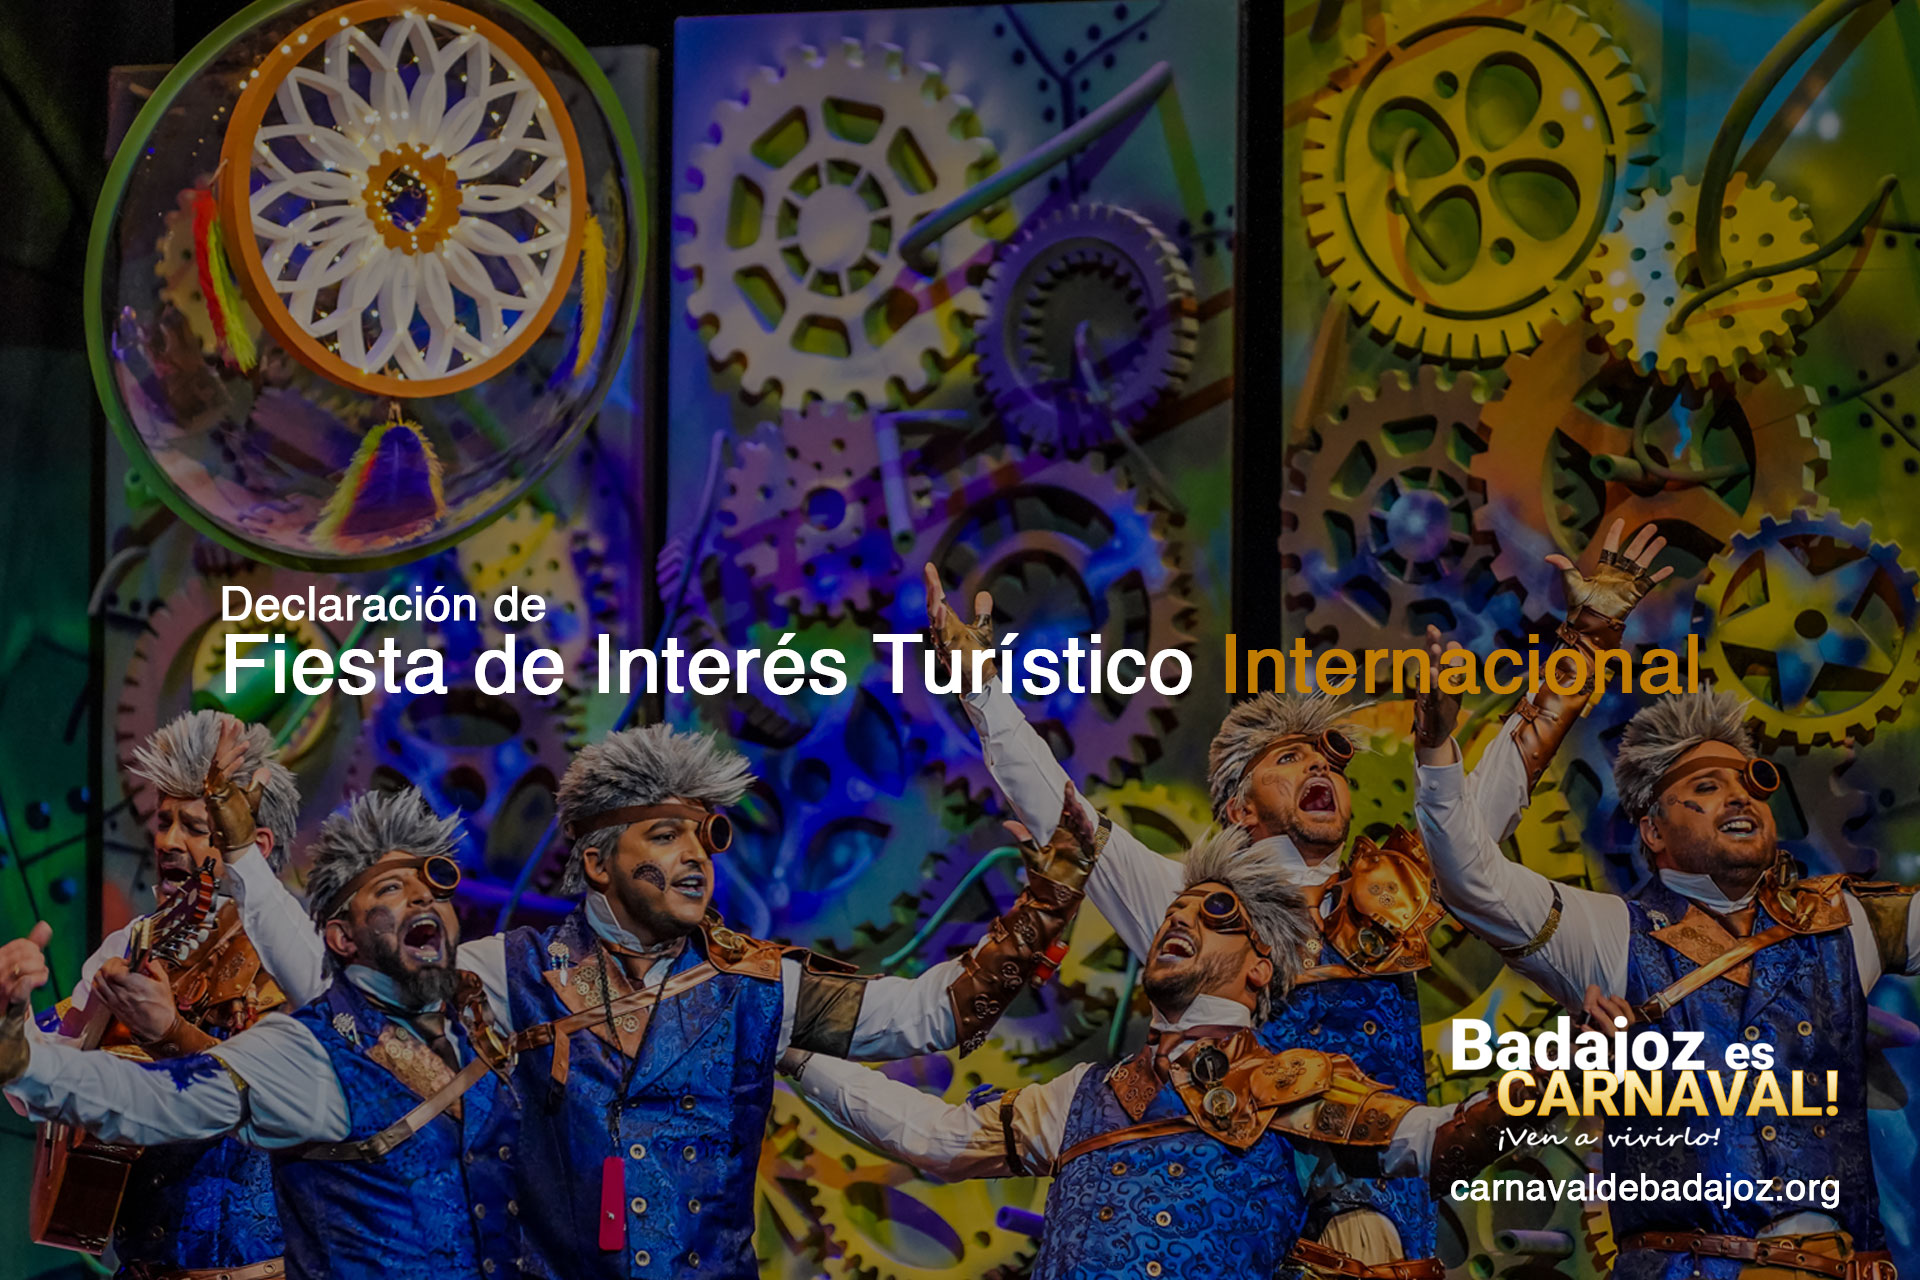 El Carnaval de Badajoz ha sido declarado como Fiesta de Interés Turístico Internacional